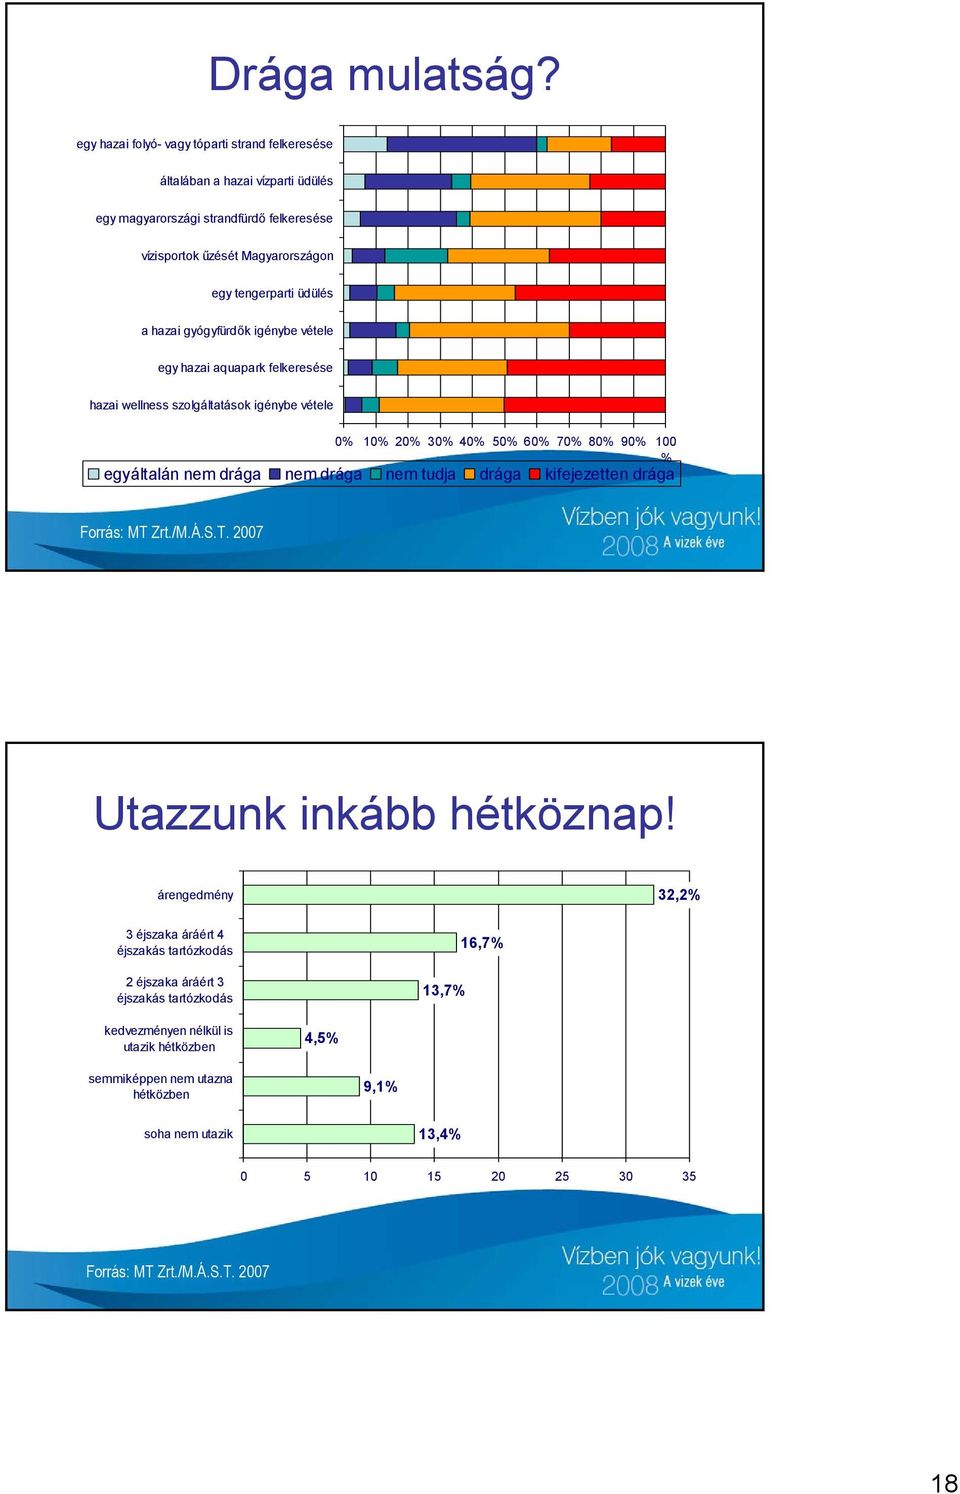 tengerparti üdülés a hazai gyógyfürdők igénybe vétele egy hazai aquapark felkeresése hazai wellness szolgáltatások igénybe vétele 0% 10% 20% 30% 40% 50% 60% 70% 80% 90%